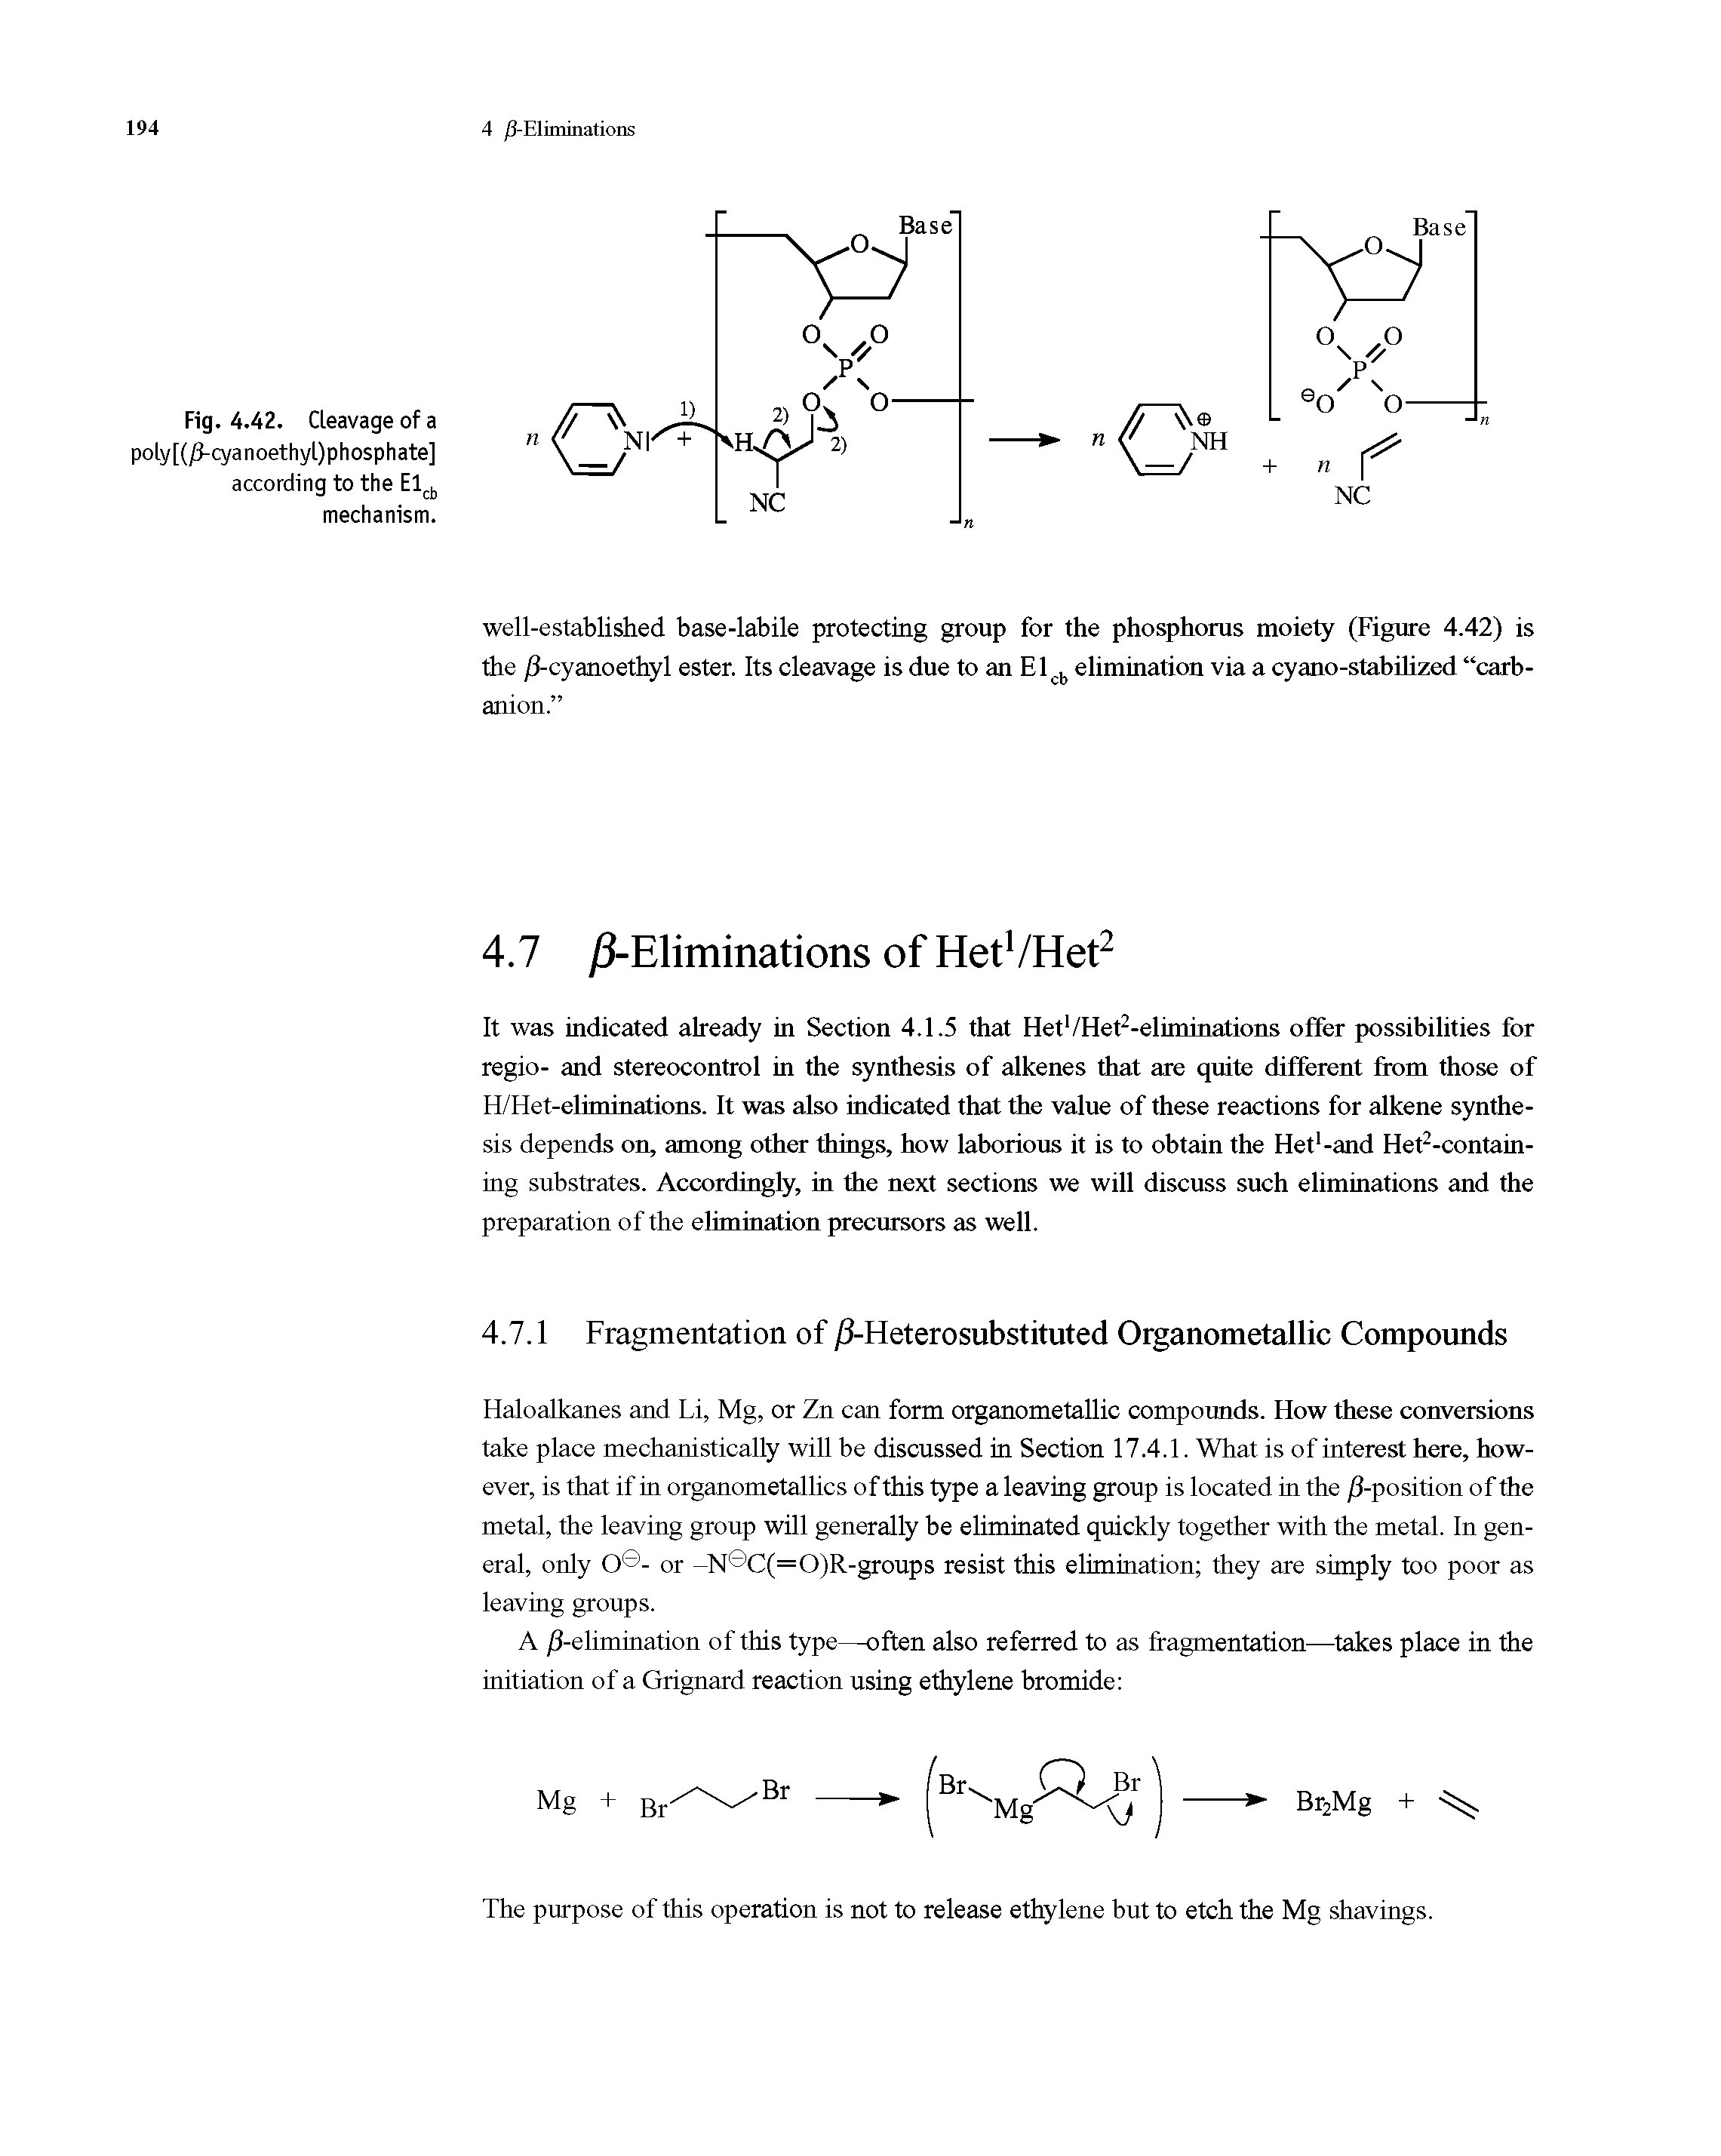 Fig. 4.42. Cleavage of a poly[(/J-cyanoethyl)phosphate] according to the Elcb mechanism.